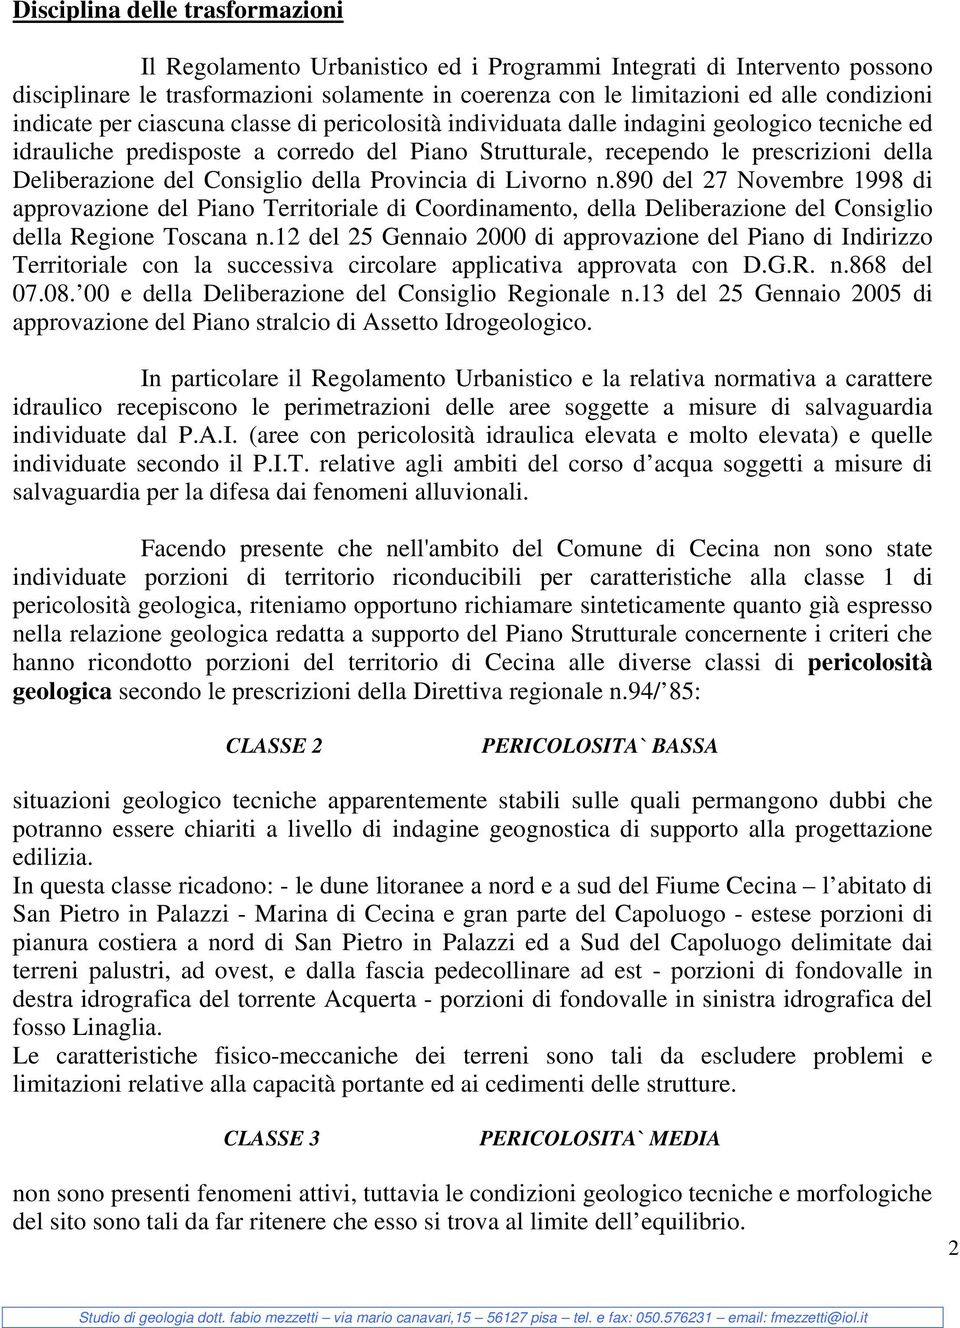 Consiglio della Provincia di Livorno n.890 del 27 Novembre 1998 di approvazione del Piano Territoriale di Coordinamento, della Deliberazione del Consiglio della Regione Toscana n.